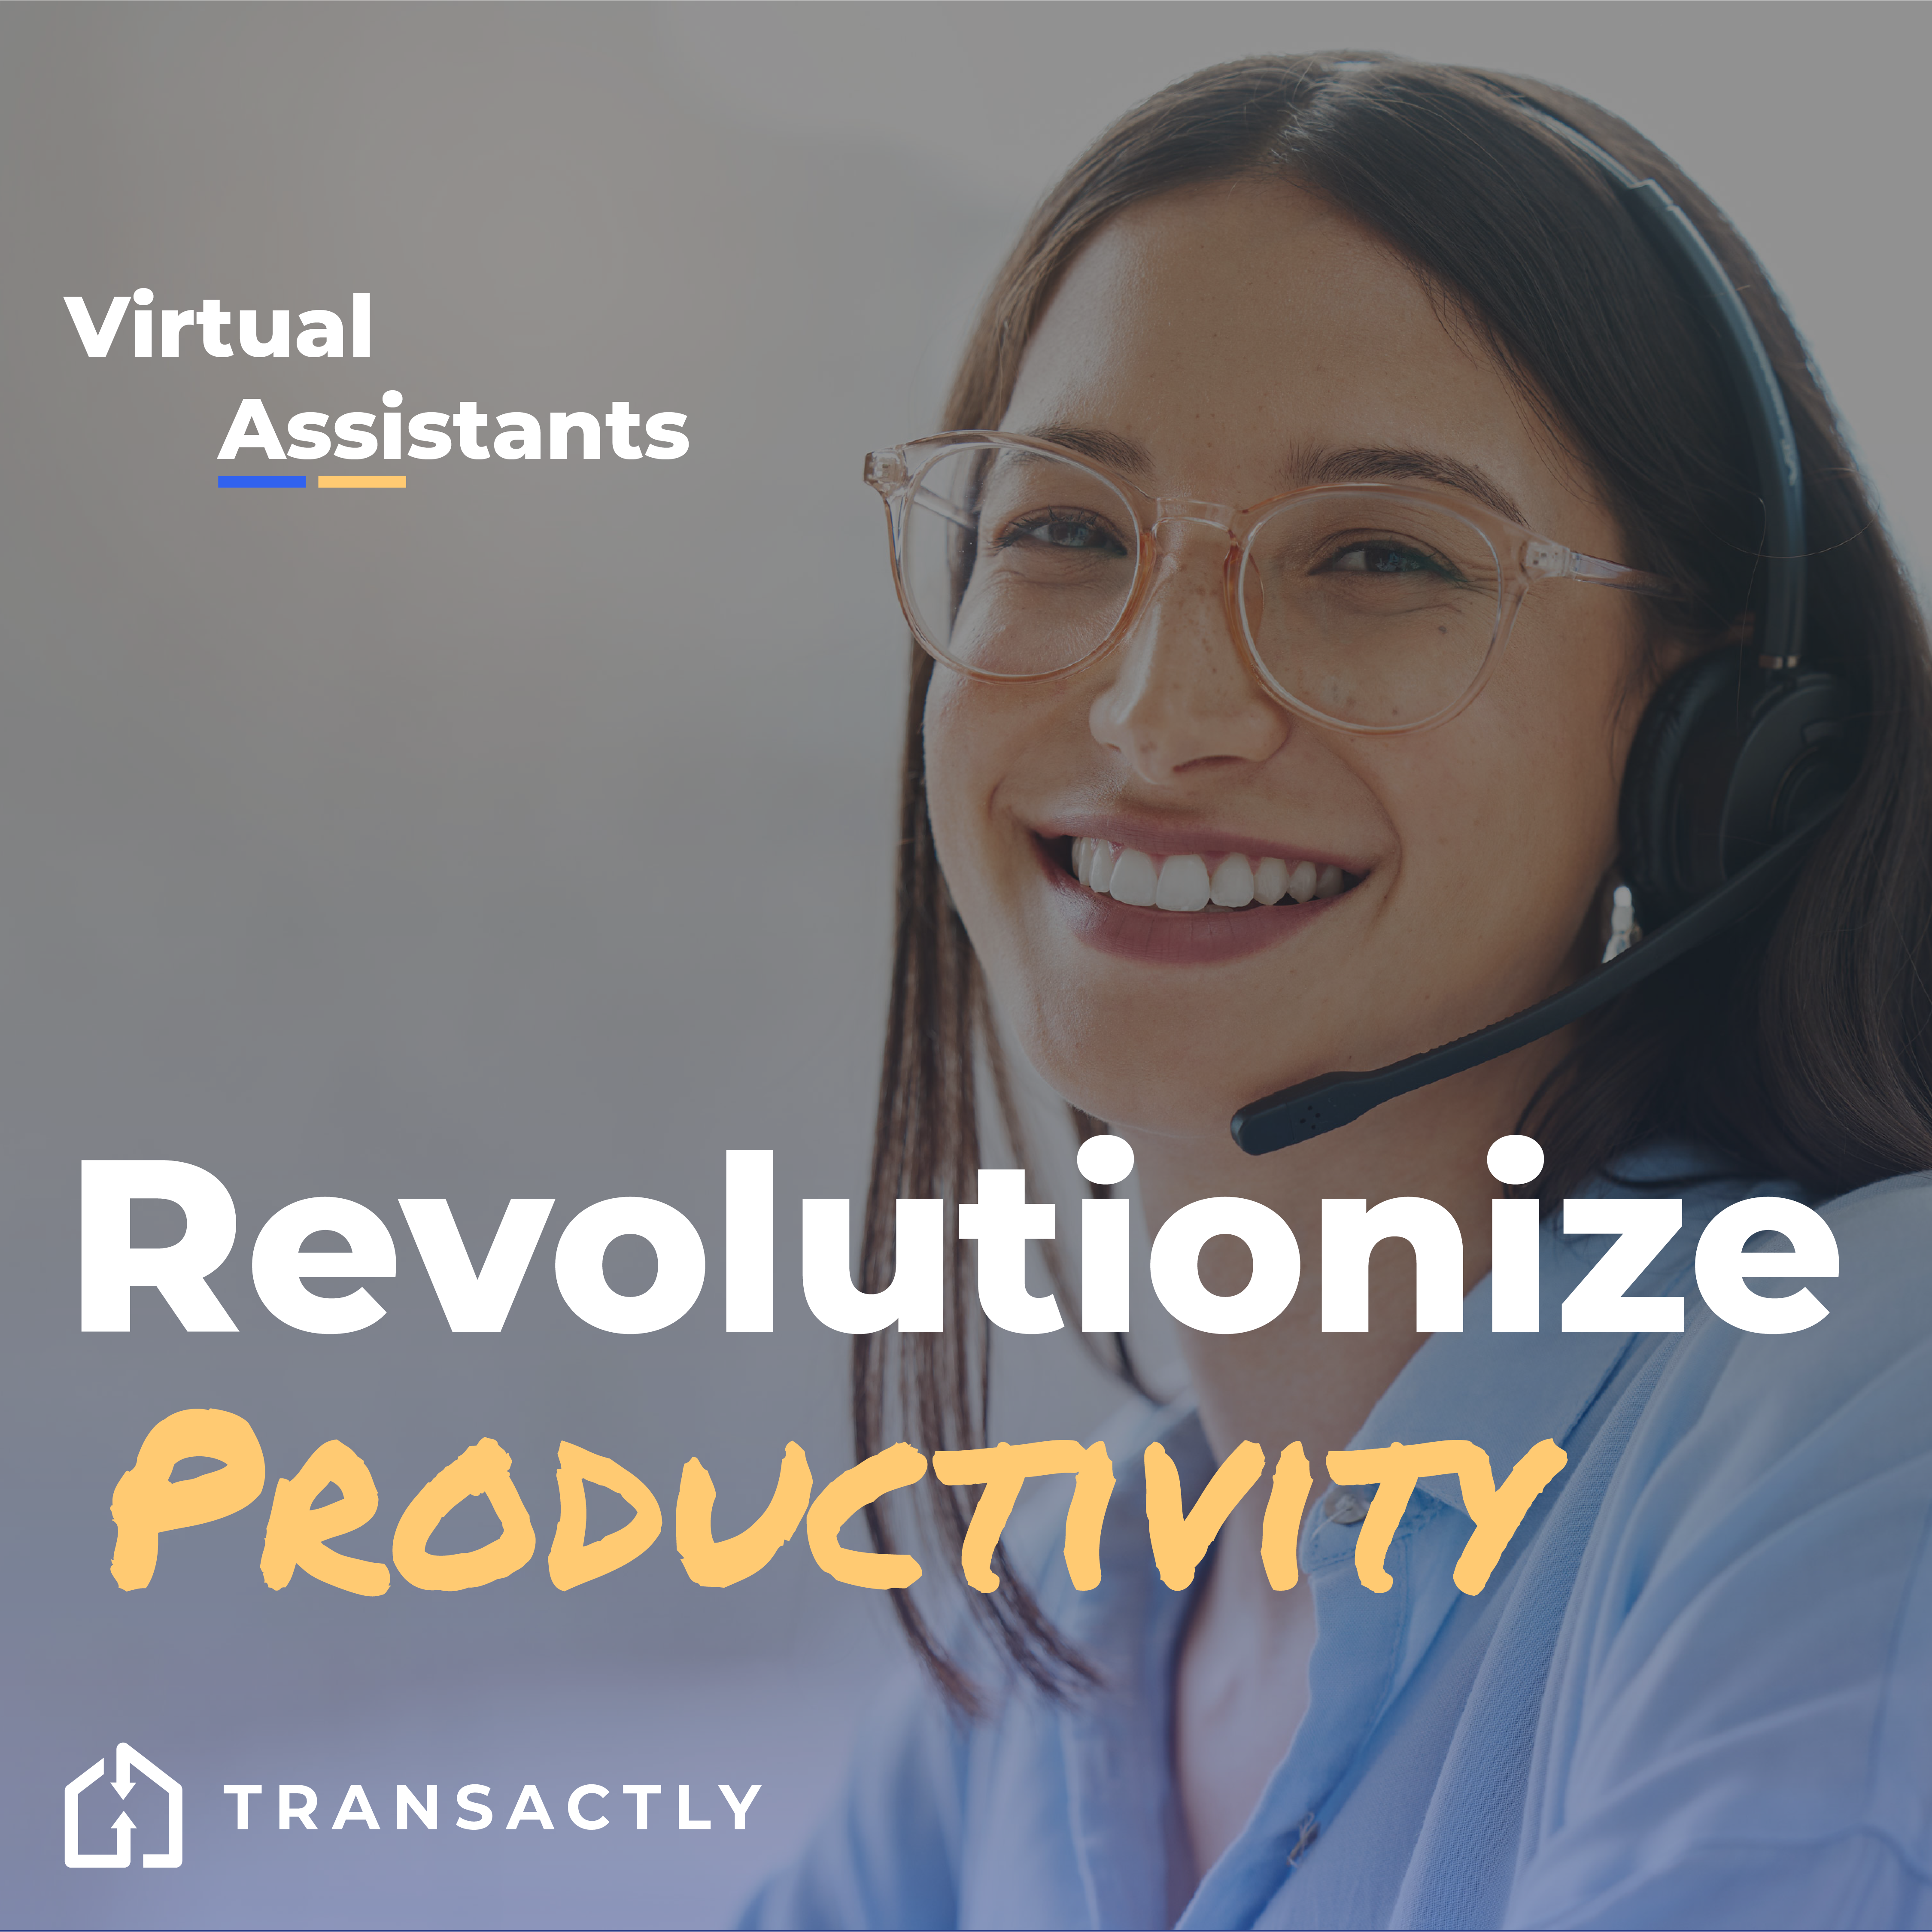 Virtual Assistant - Social- Announcement